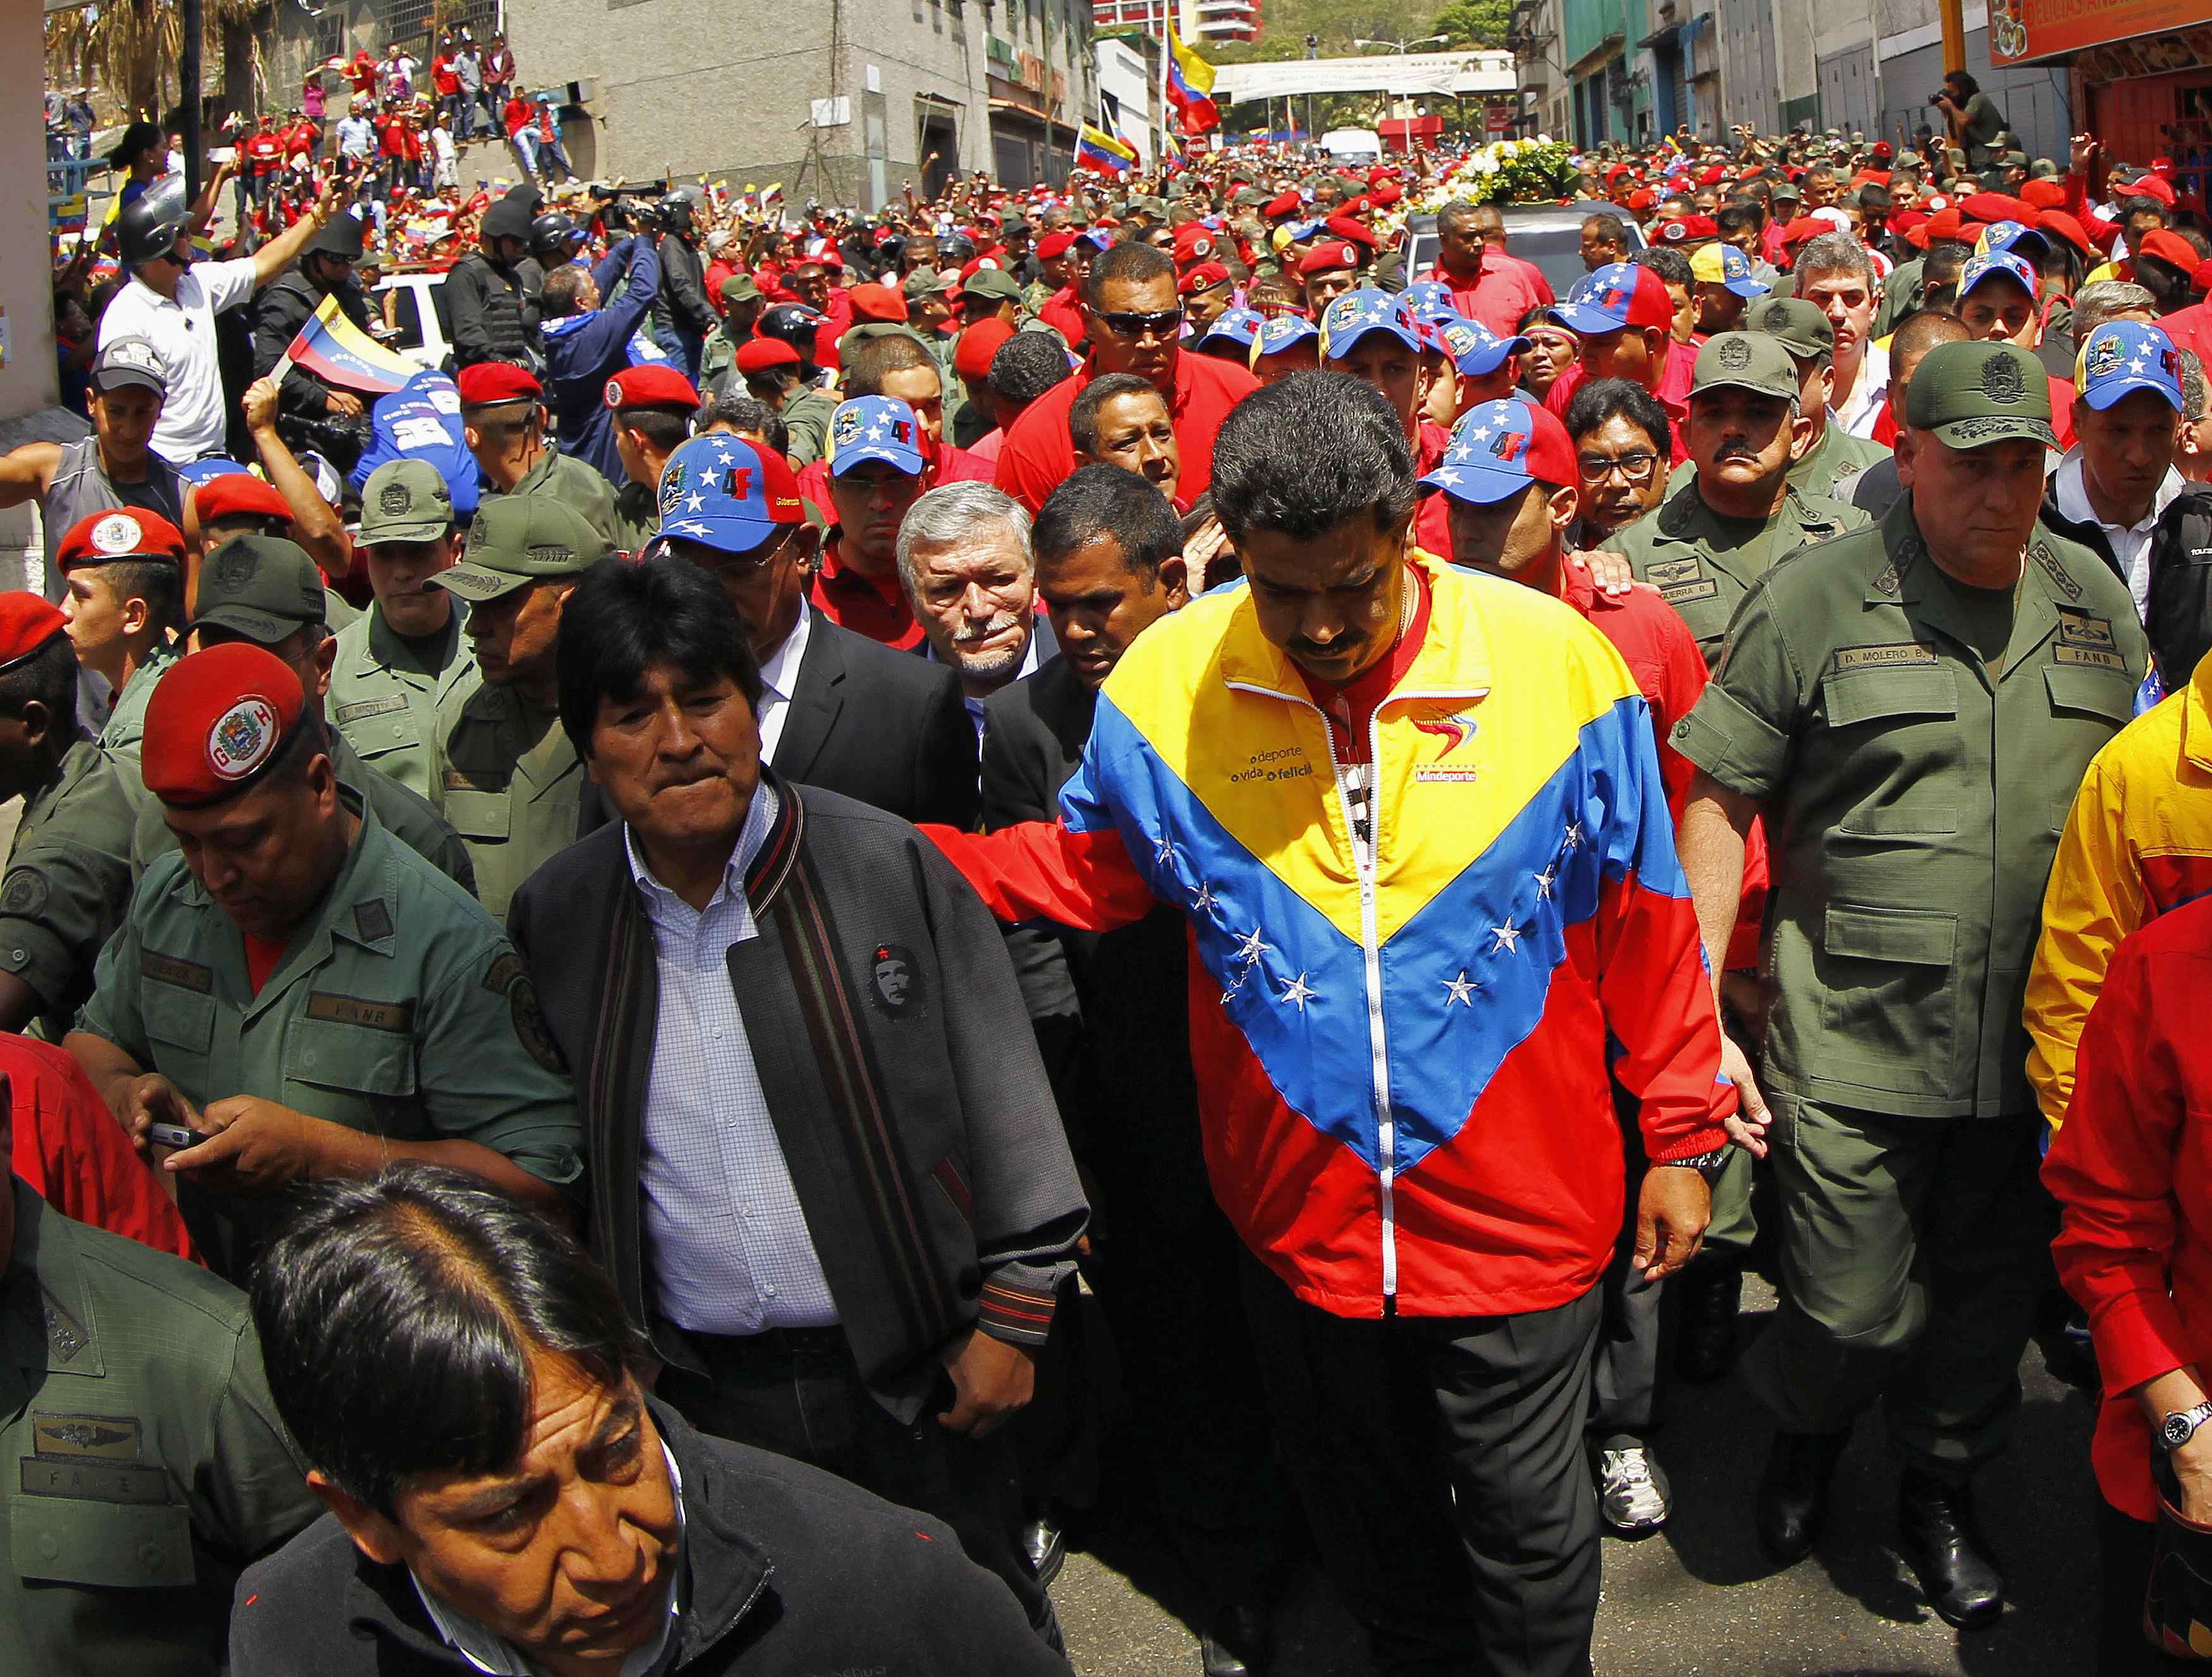 Maduro camina acompañado por Evo Morales a los pies del ataúd de Chávez (FOTO)